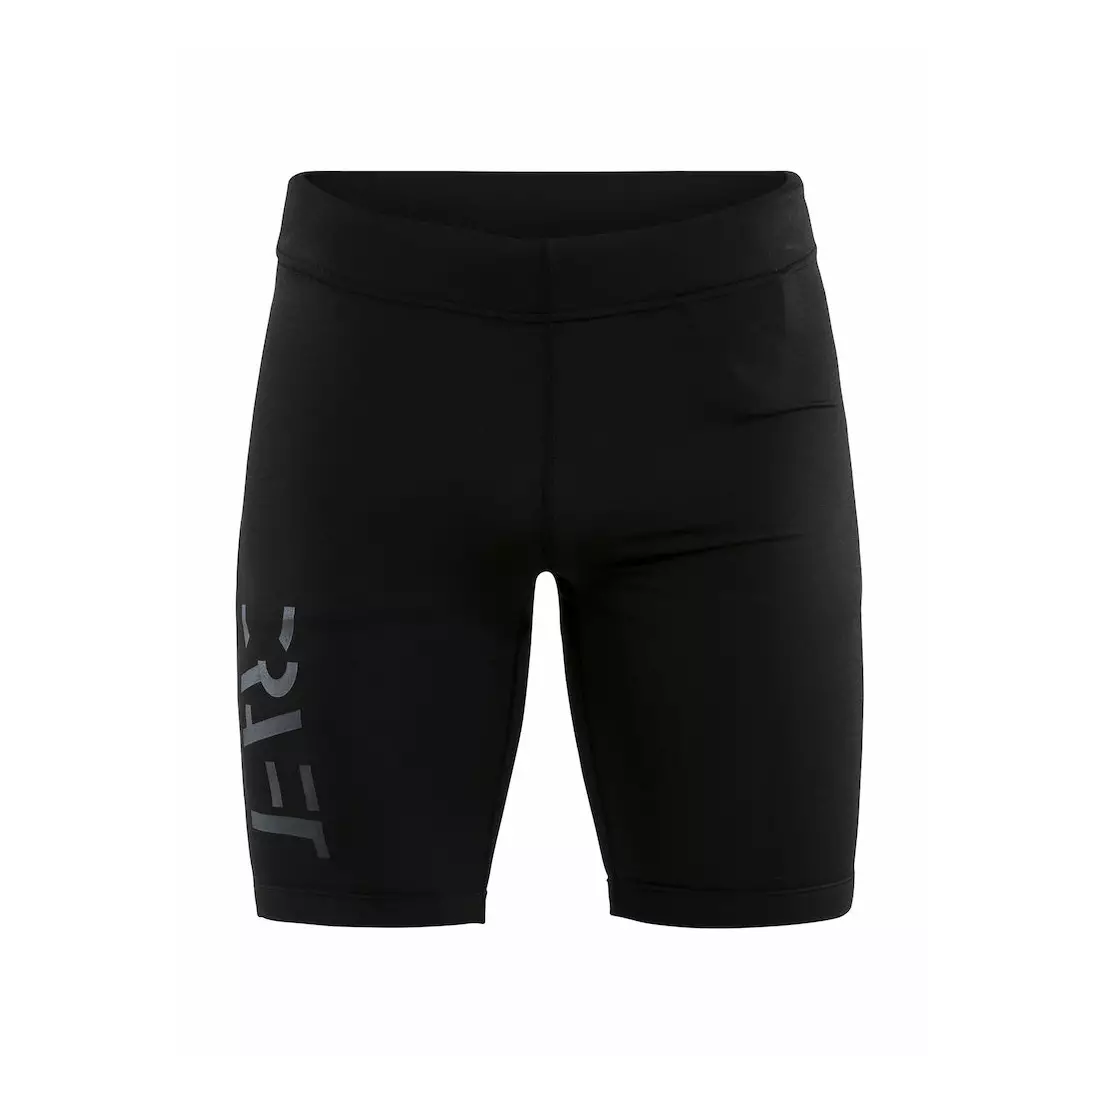 CRAFT EAZE training shorts black, 1907053